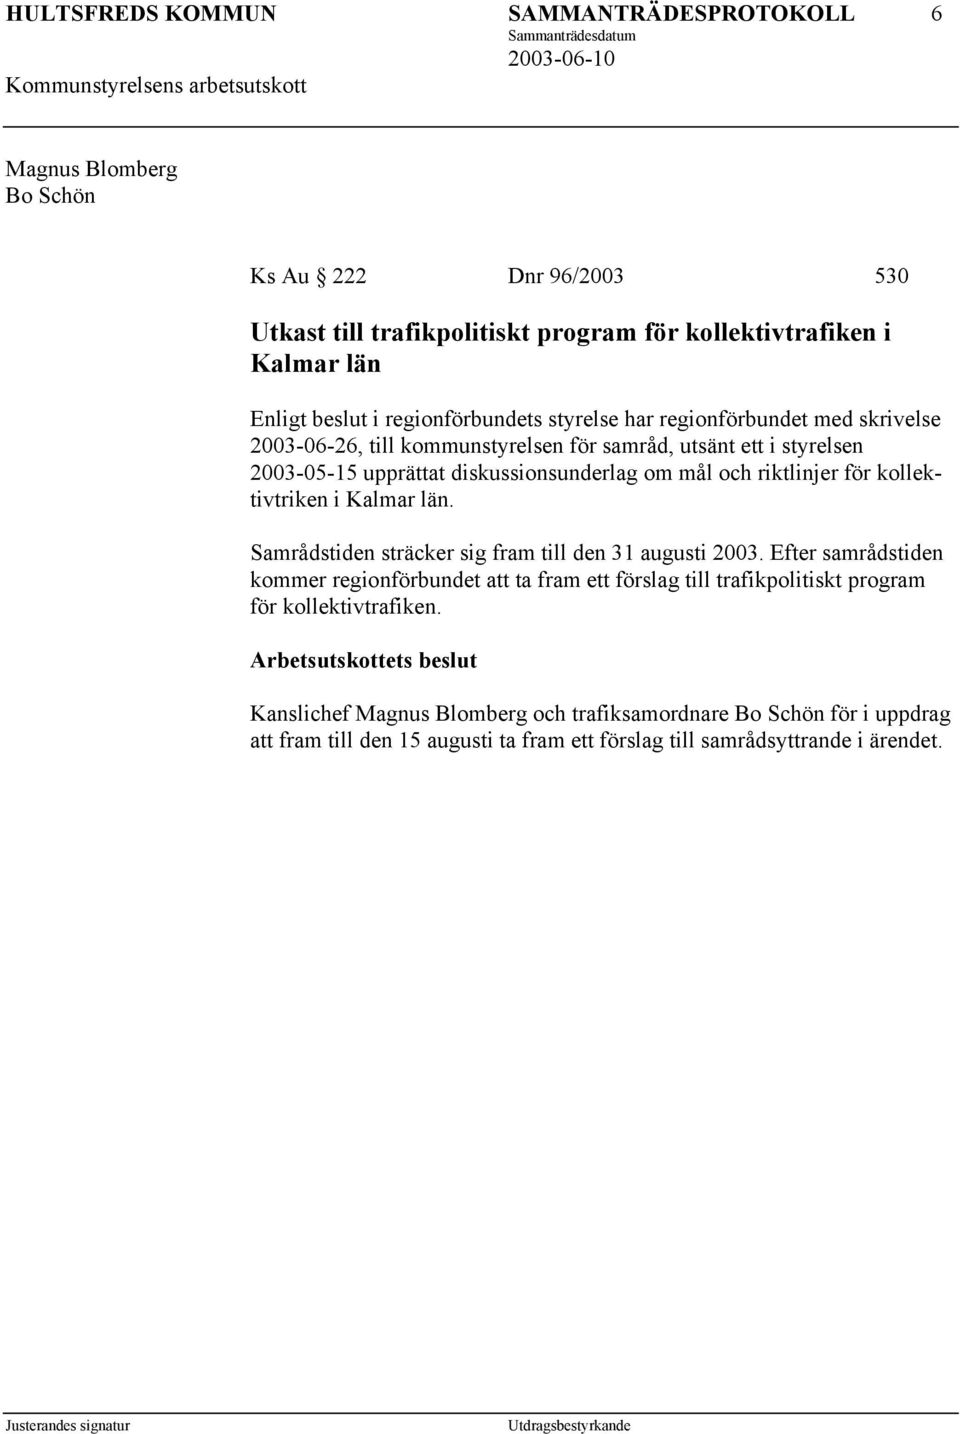 kollektivtriken i Kalmar län. Samrådstiden sträcker sig fram till den 31 augusti 2003.